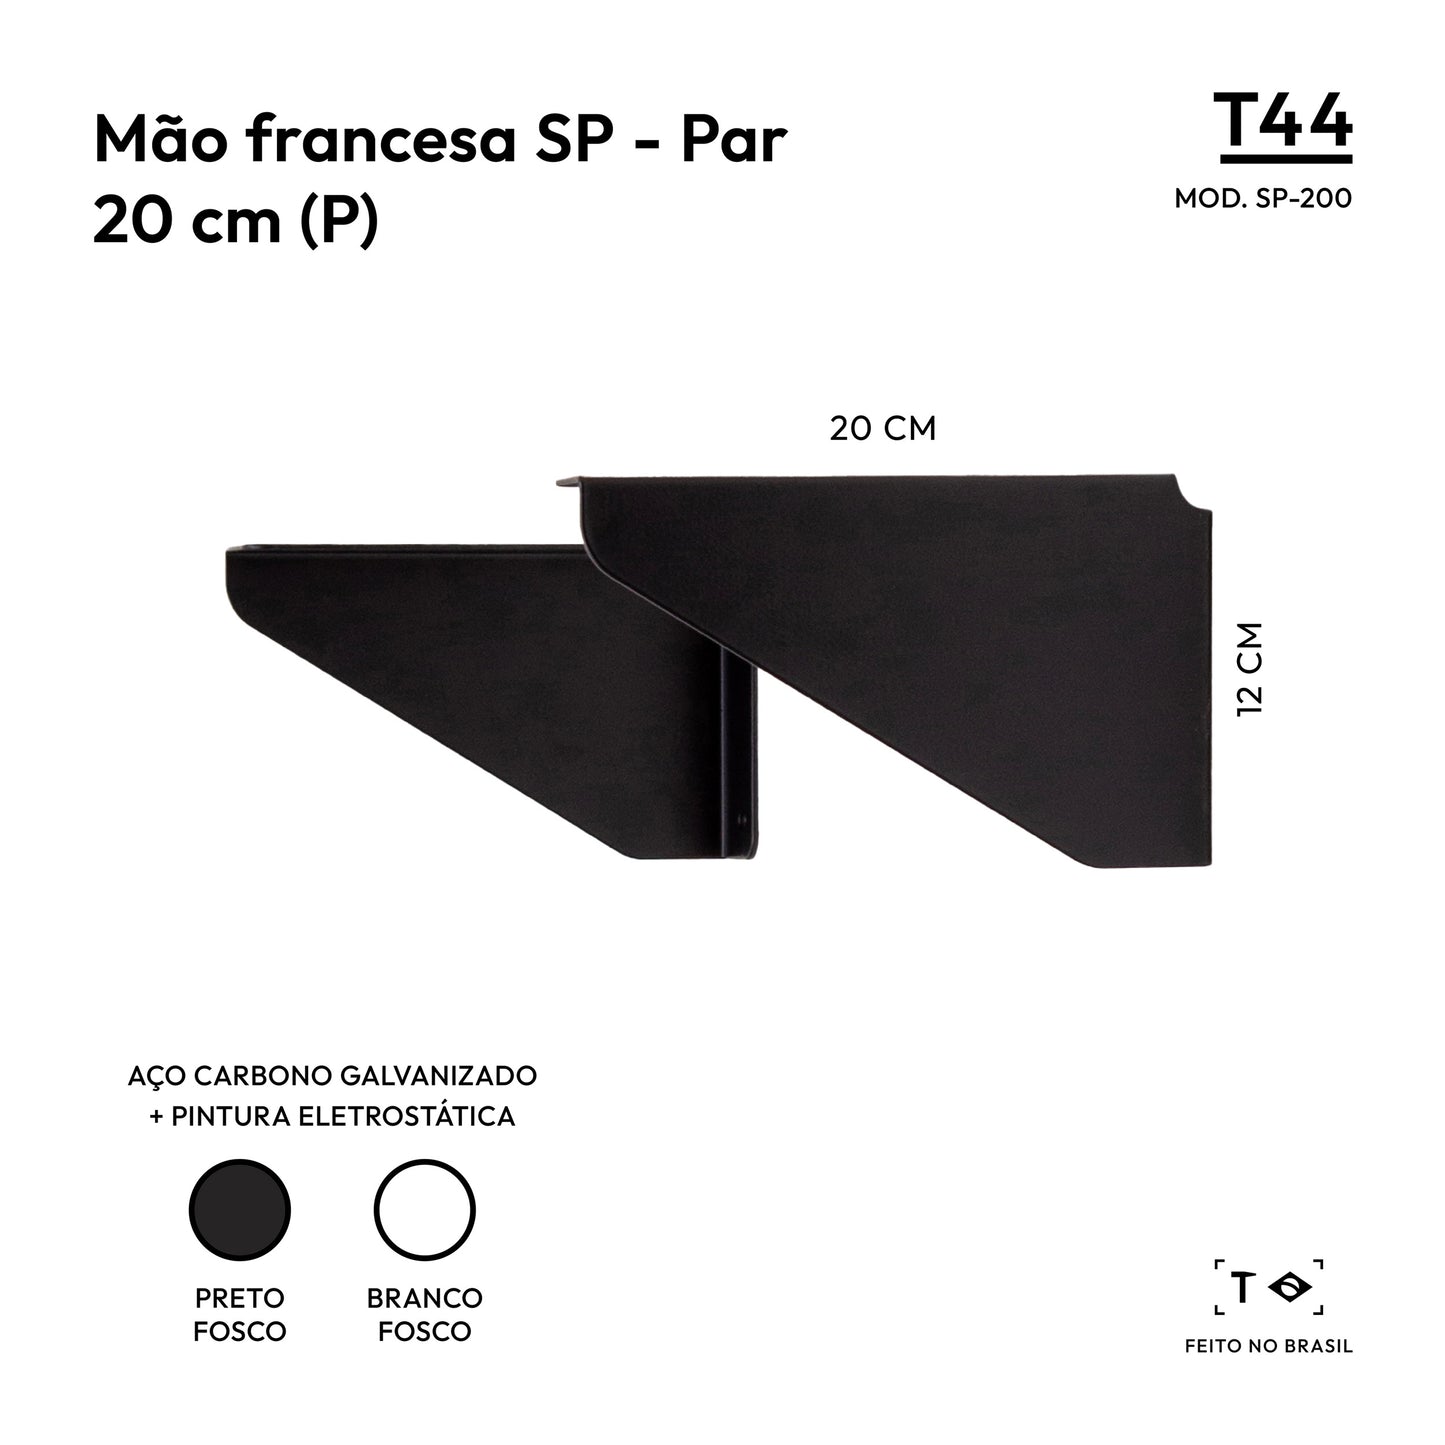 Mão francesa SP 20 cm (Par) - Suporte para Prateleira em Aço / SP-200 T44